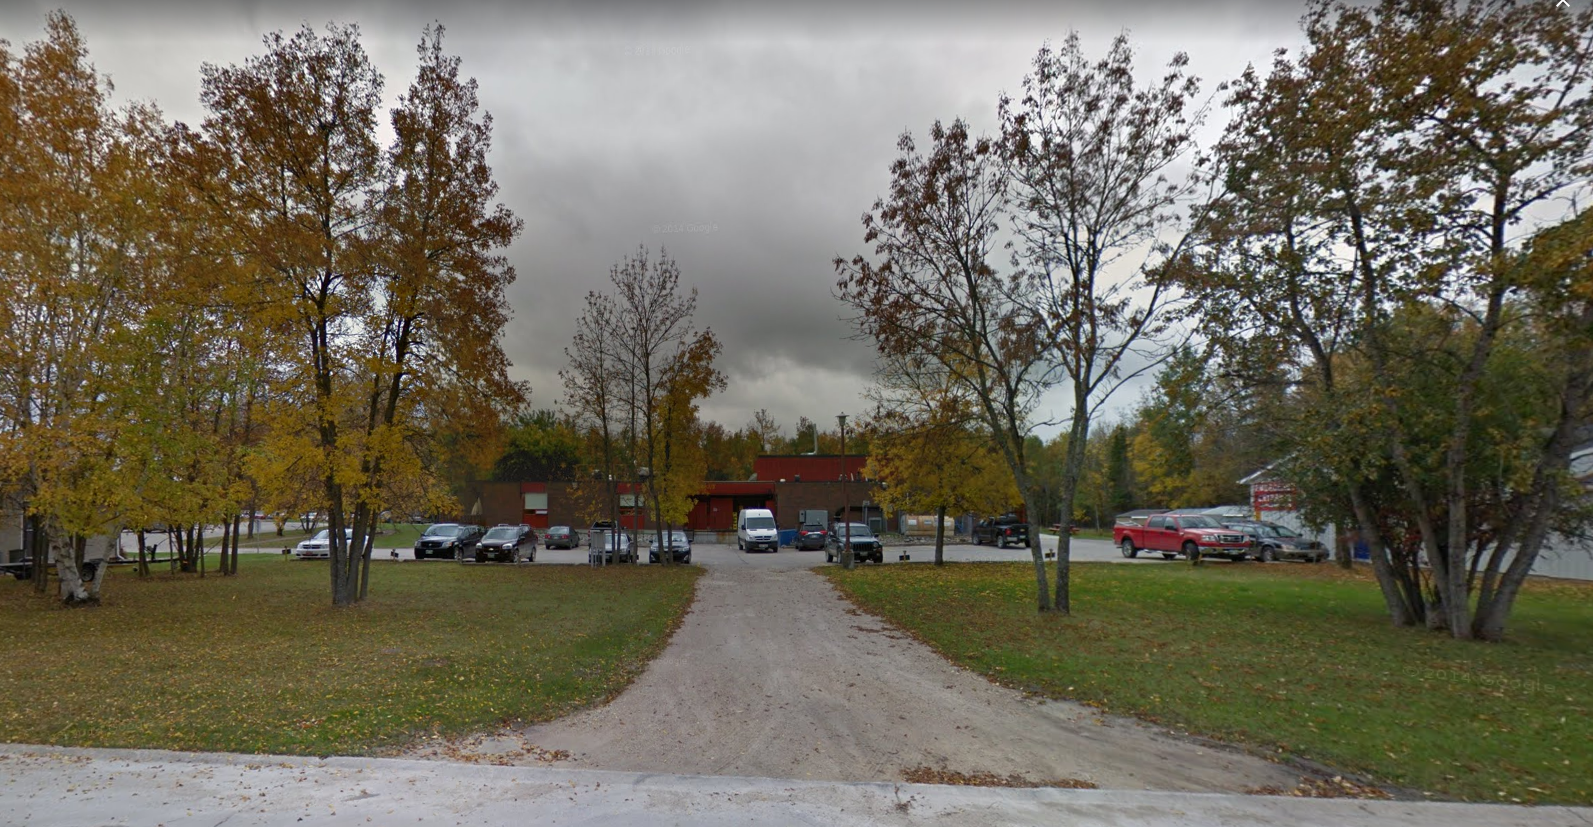 Missing man needing medical care last seen at Pinawa hospital: Manitoba RCMP